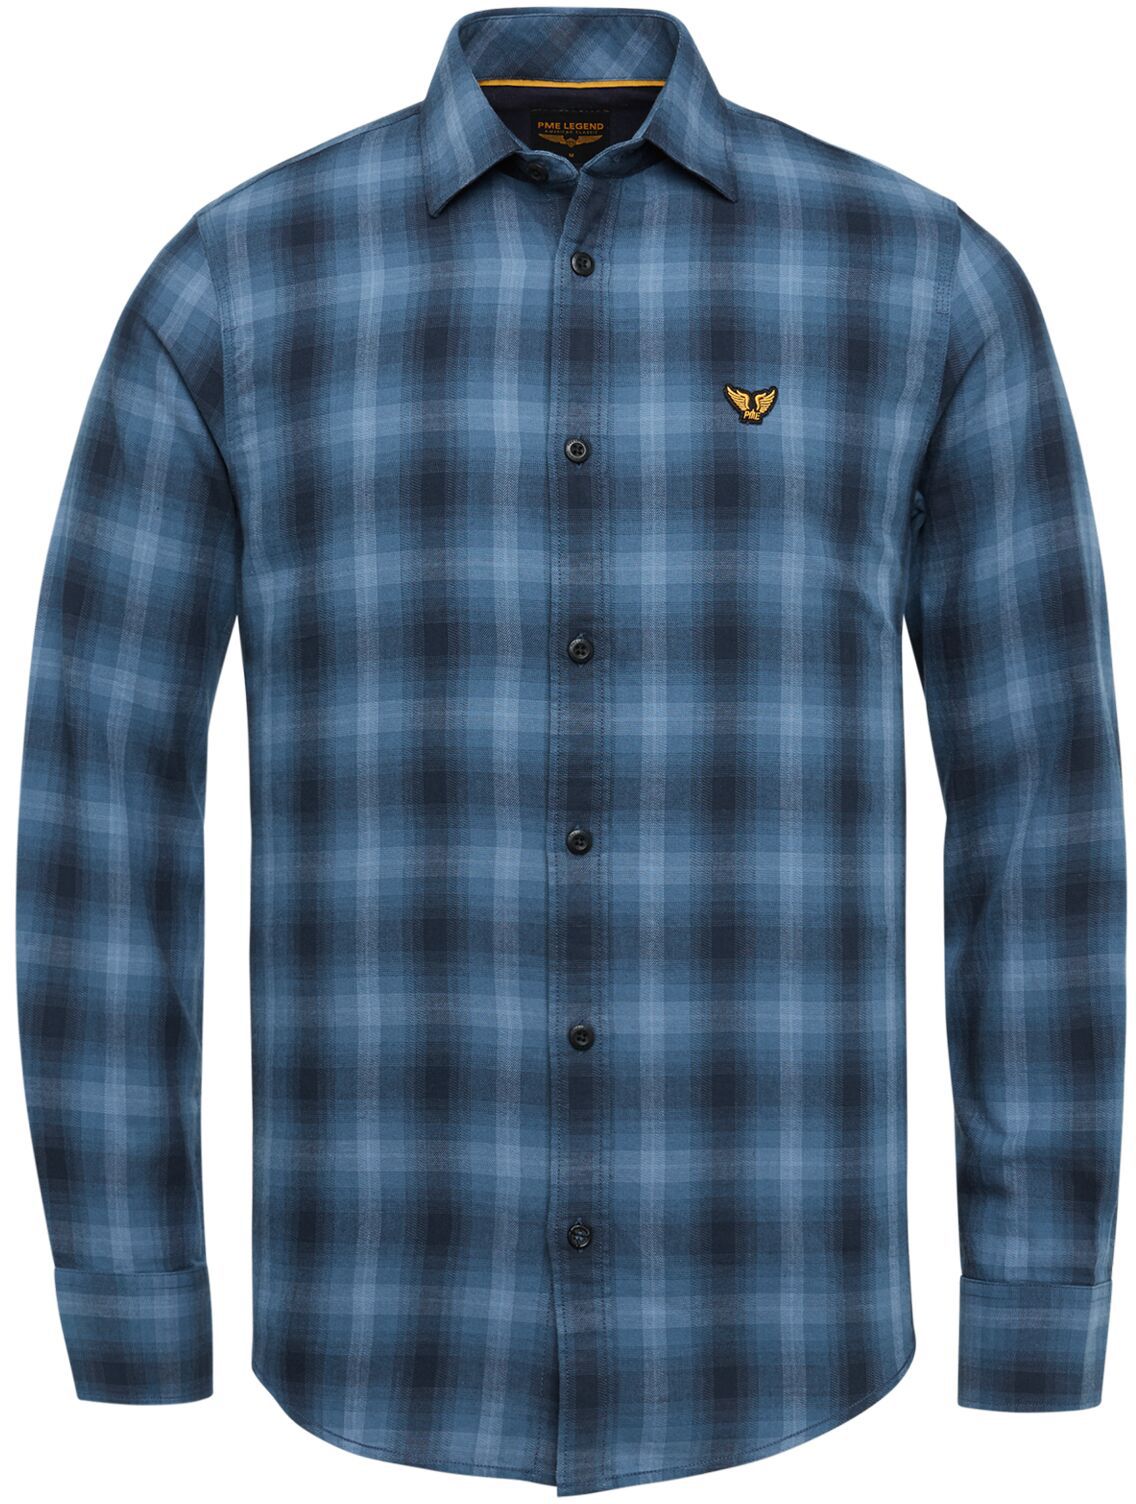 PME Legend Shirt Checkered Dark Blue Dark Blue size 3XL